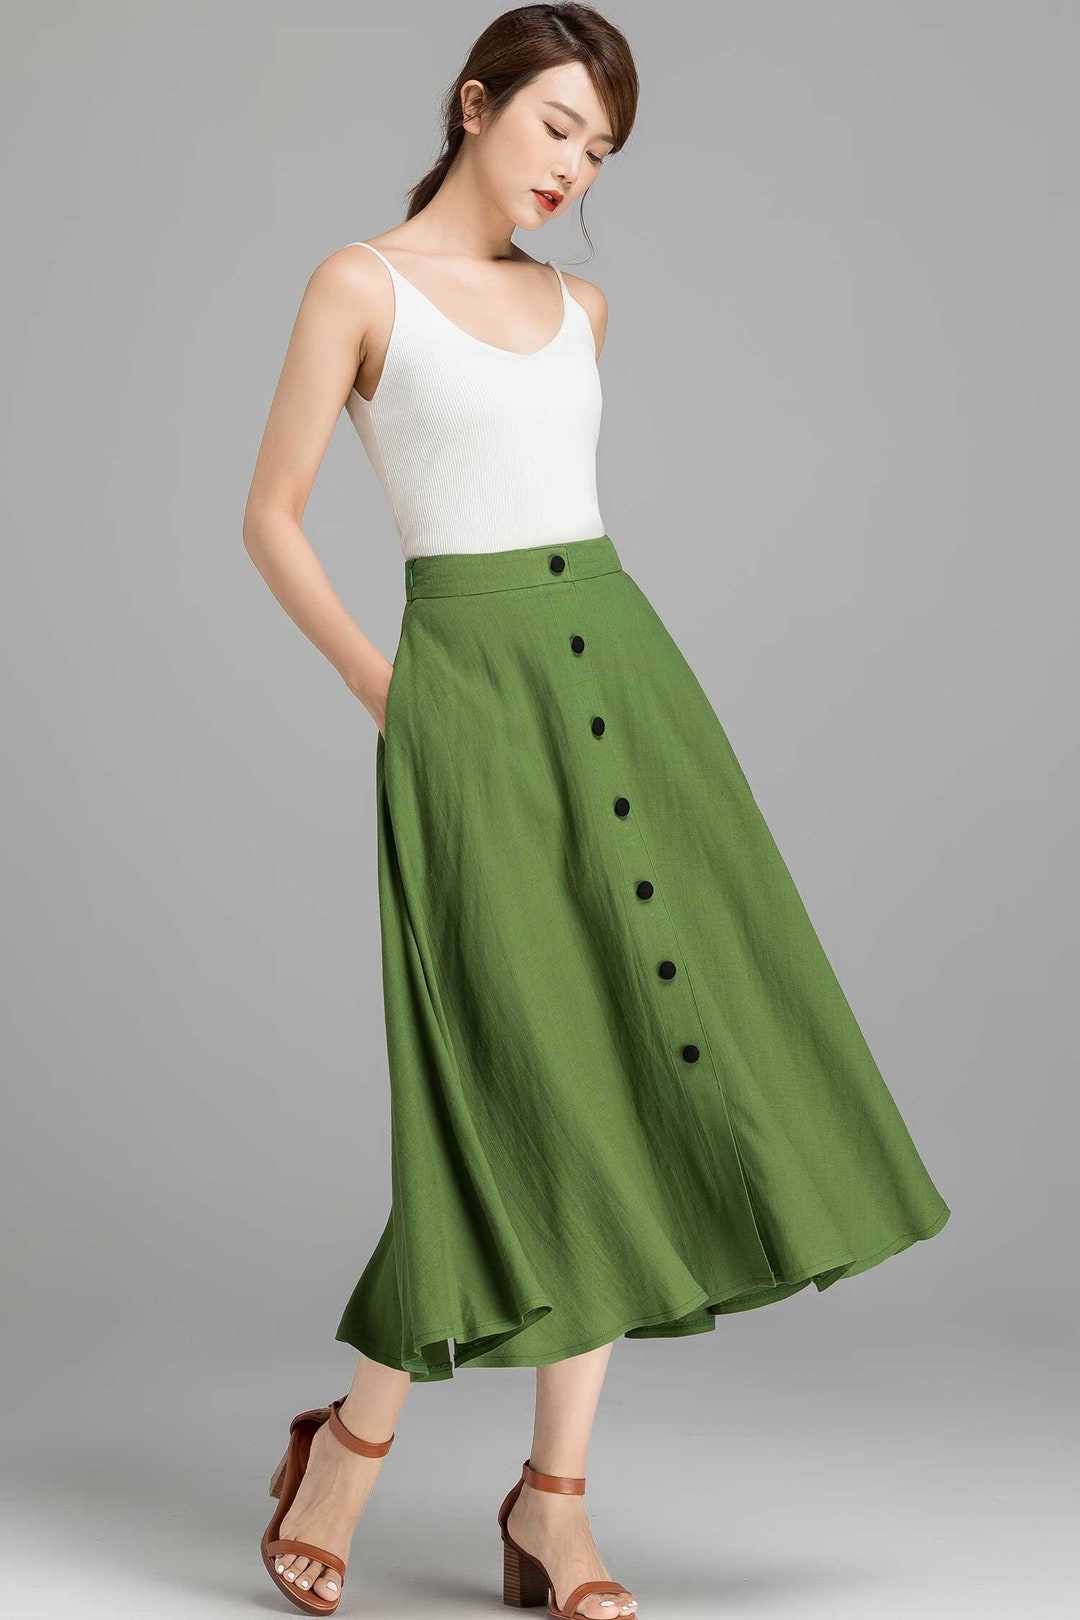 Button-down Linen Midi Skirt, A-line Swing Skirt, Linen Skirt, Green Skirt,  Women Skirt, High Waisted Skirt With Pockets, Summer Skirt 2368 